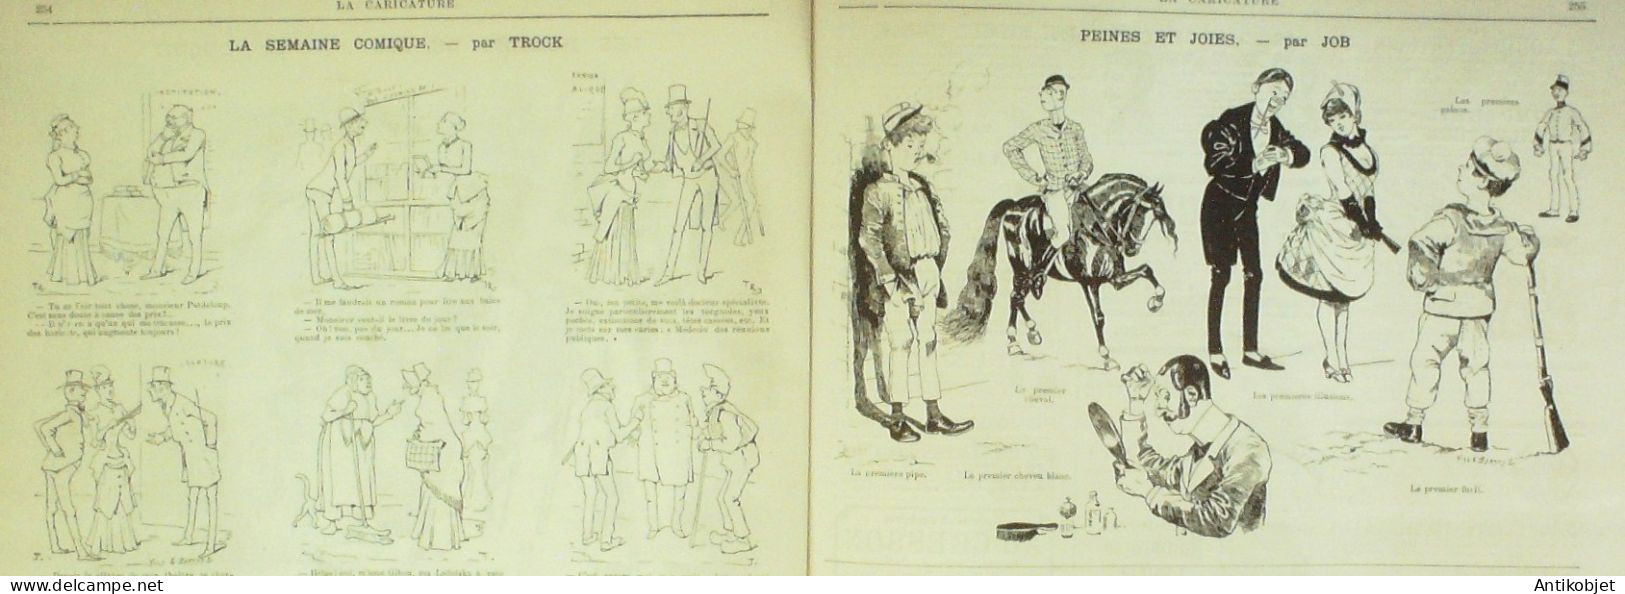 La Caricature 1884 N°240 Vie Joyeuse Job Loys Meissonier Par Luque Trock - Revues Anciennes - Avant 1900